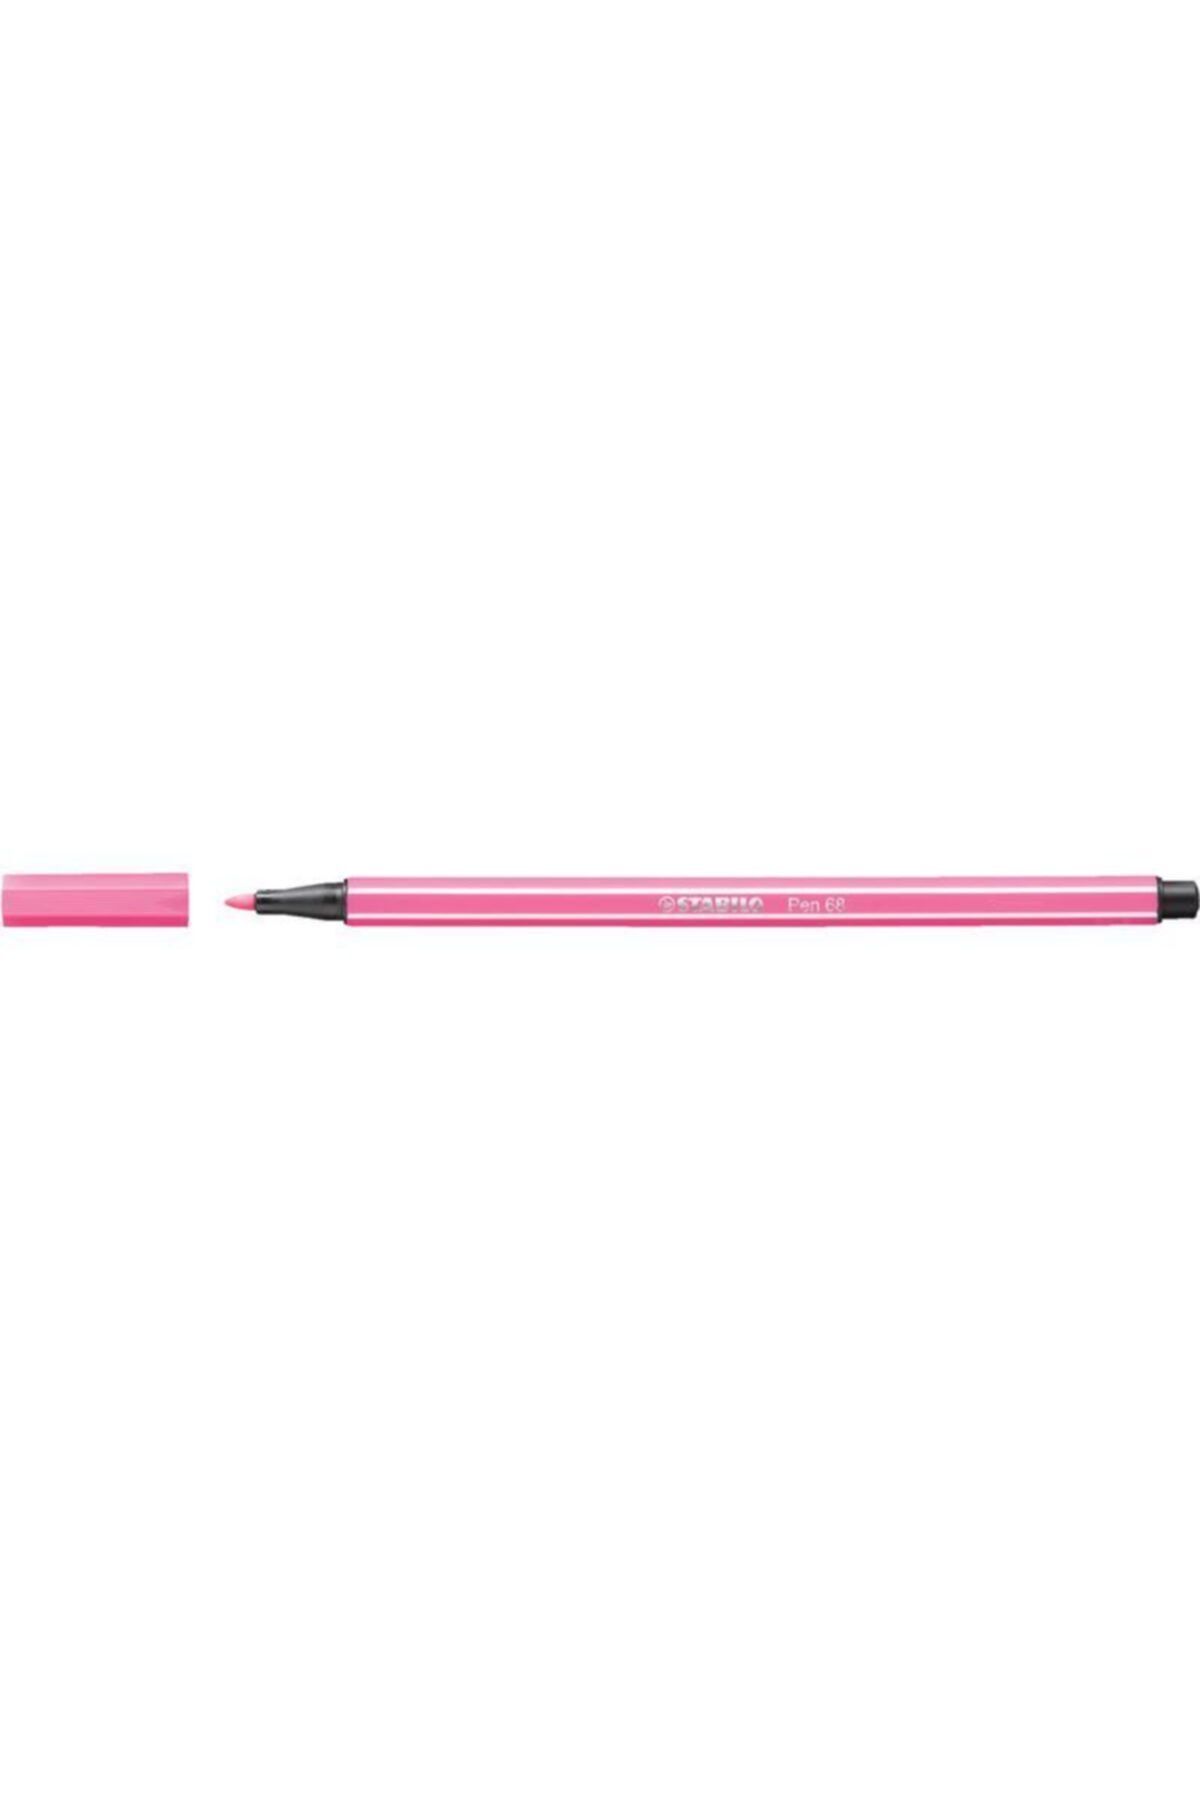 Stabilo Pen 68 Keçeli Kalem - Açık Pembe